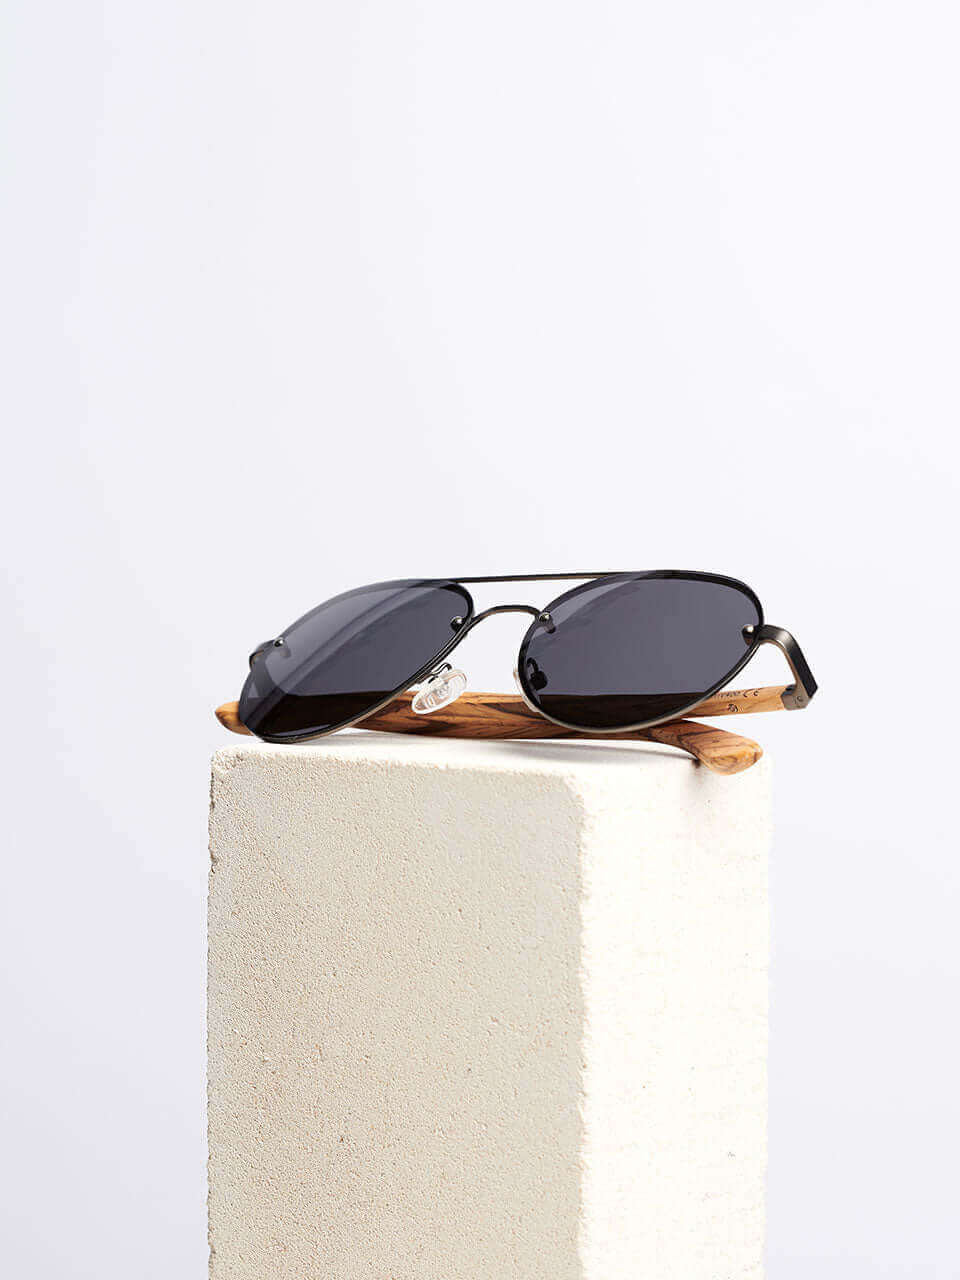 Sierra - Wooden Sunglasses for Men and Women